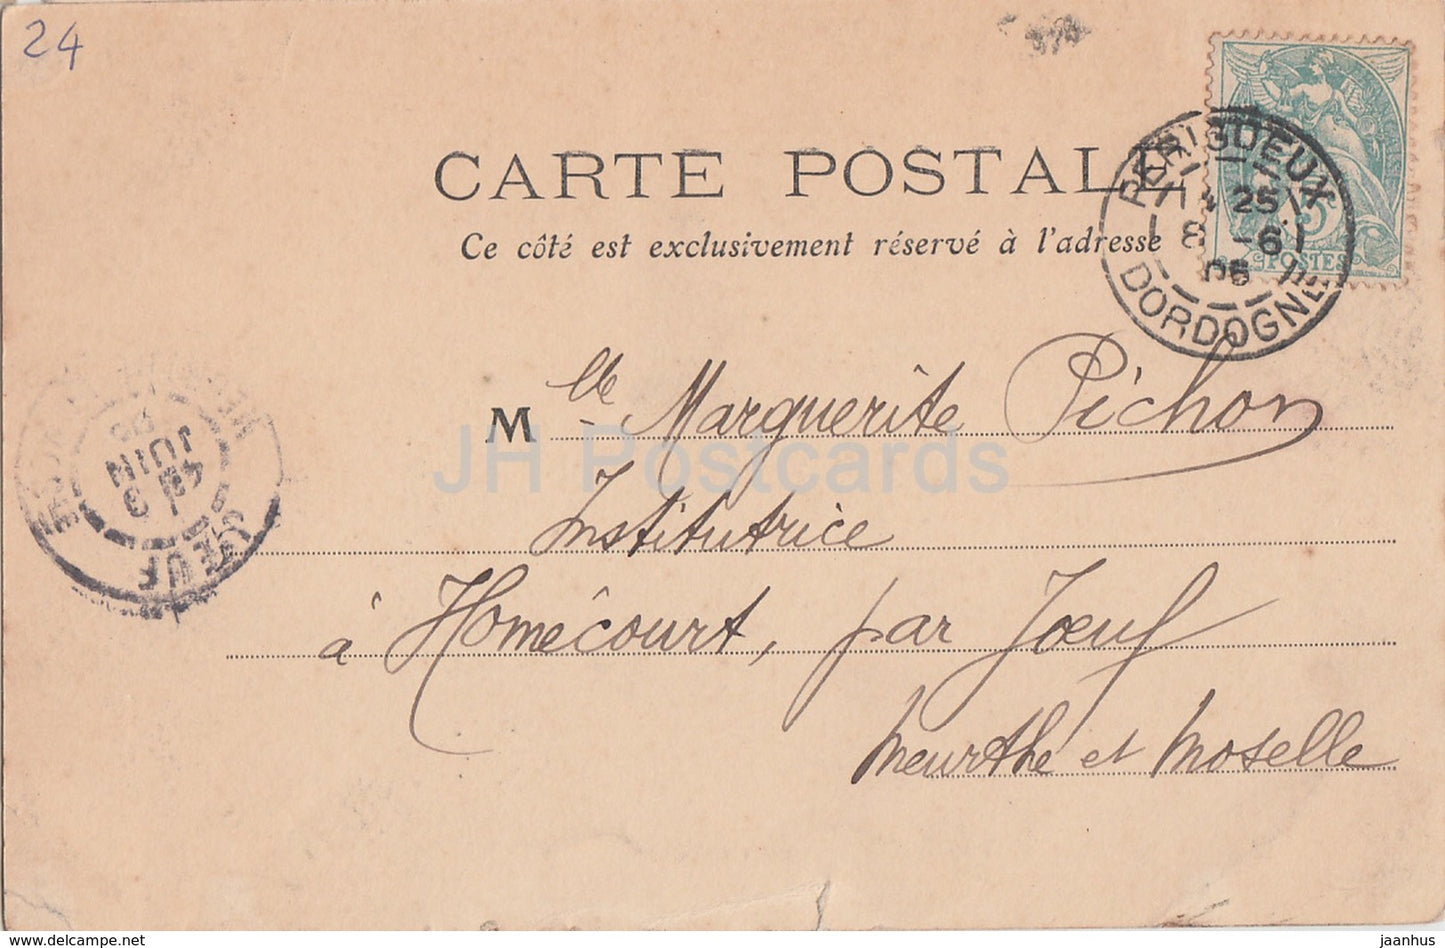 Périgueux - Dordogne - Entrée de la Cathédrale St Front - cathédrale - 61 - carte postale ancienne - 1906 - France - utilisé